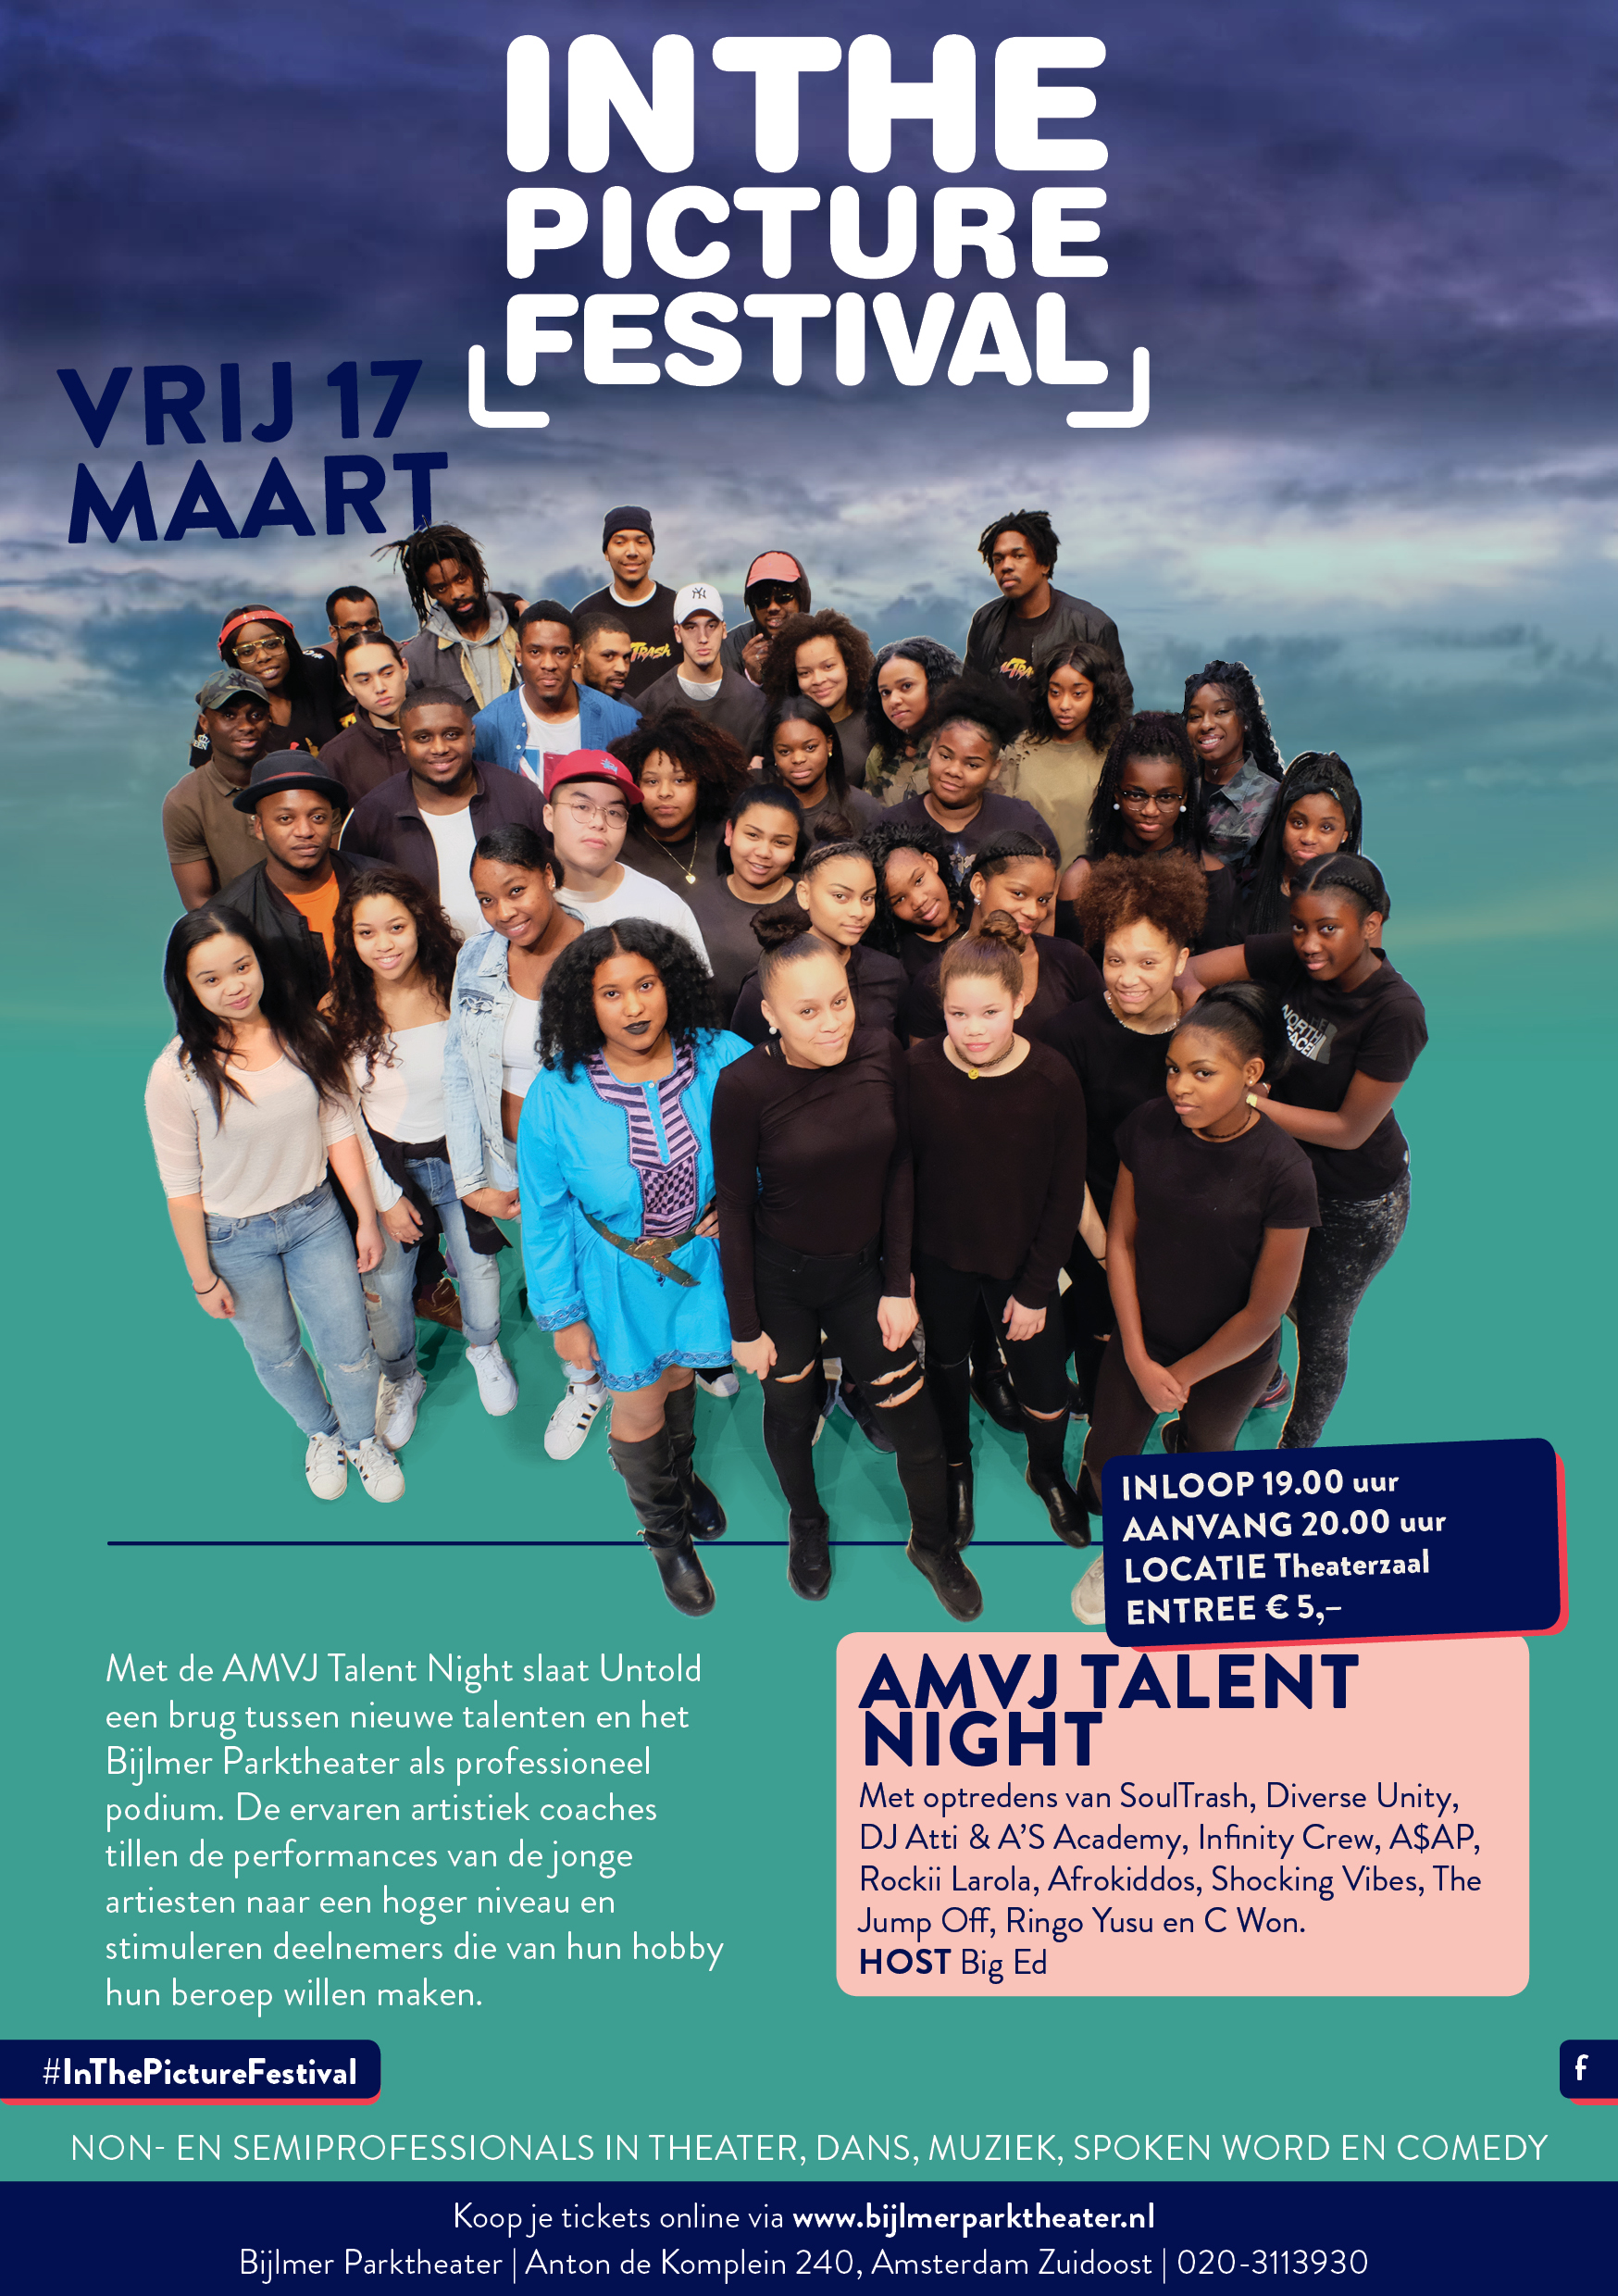 Financiële ondersteuning aan culturele organisaties in Amsterdam die sociaal-culturele projecten organiseren voor Amsterdamse jongeren - Project 10461AMVJ Talentnight 2017